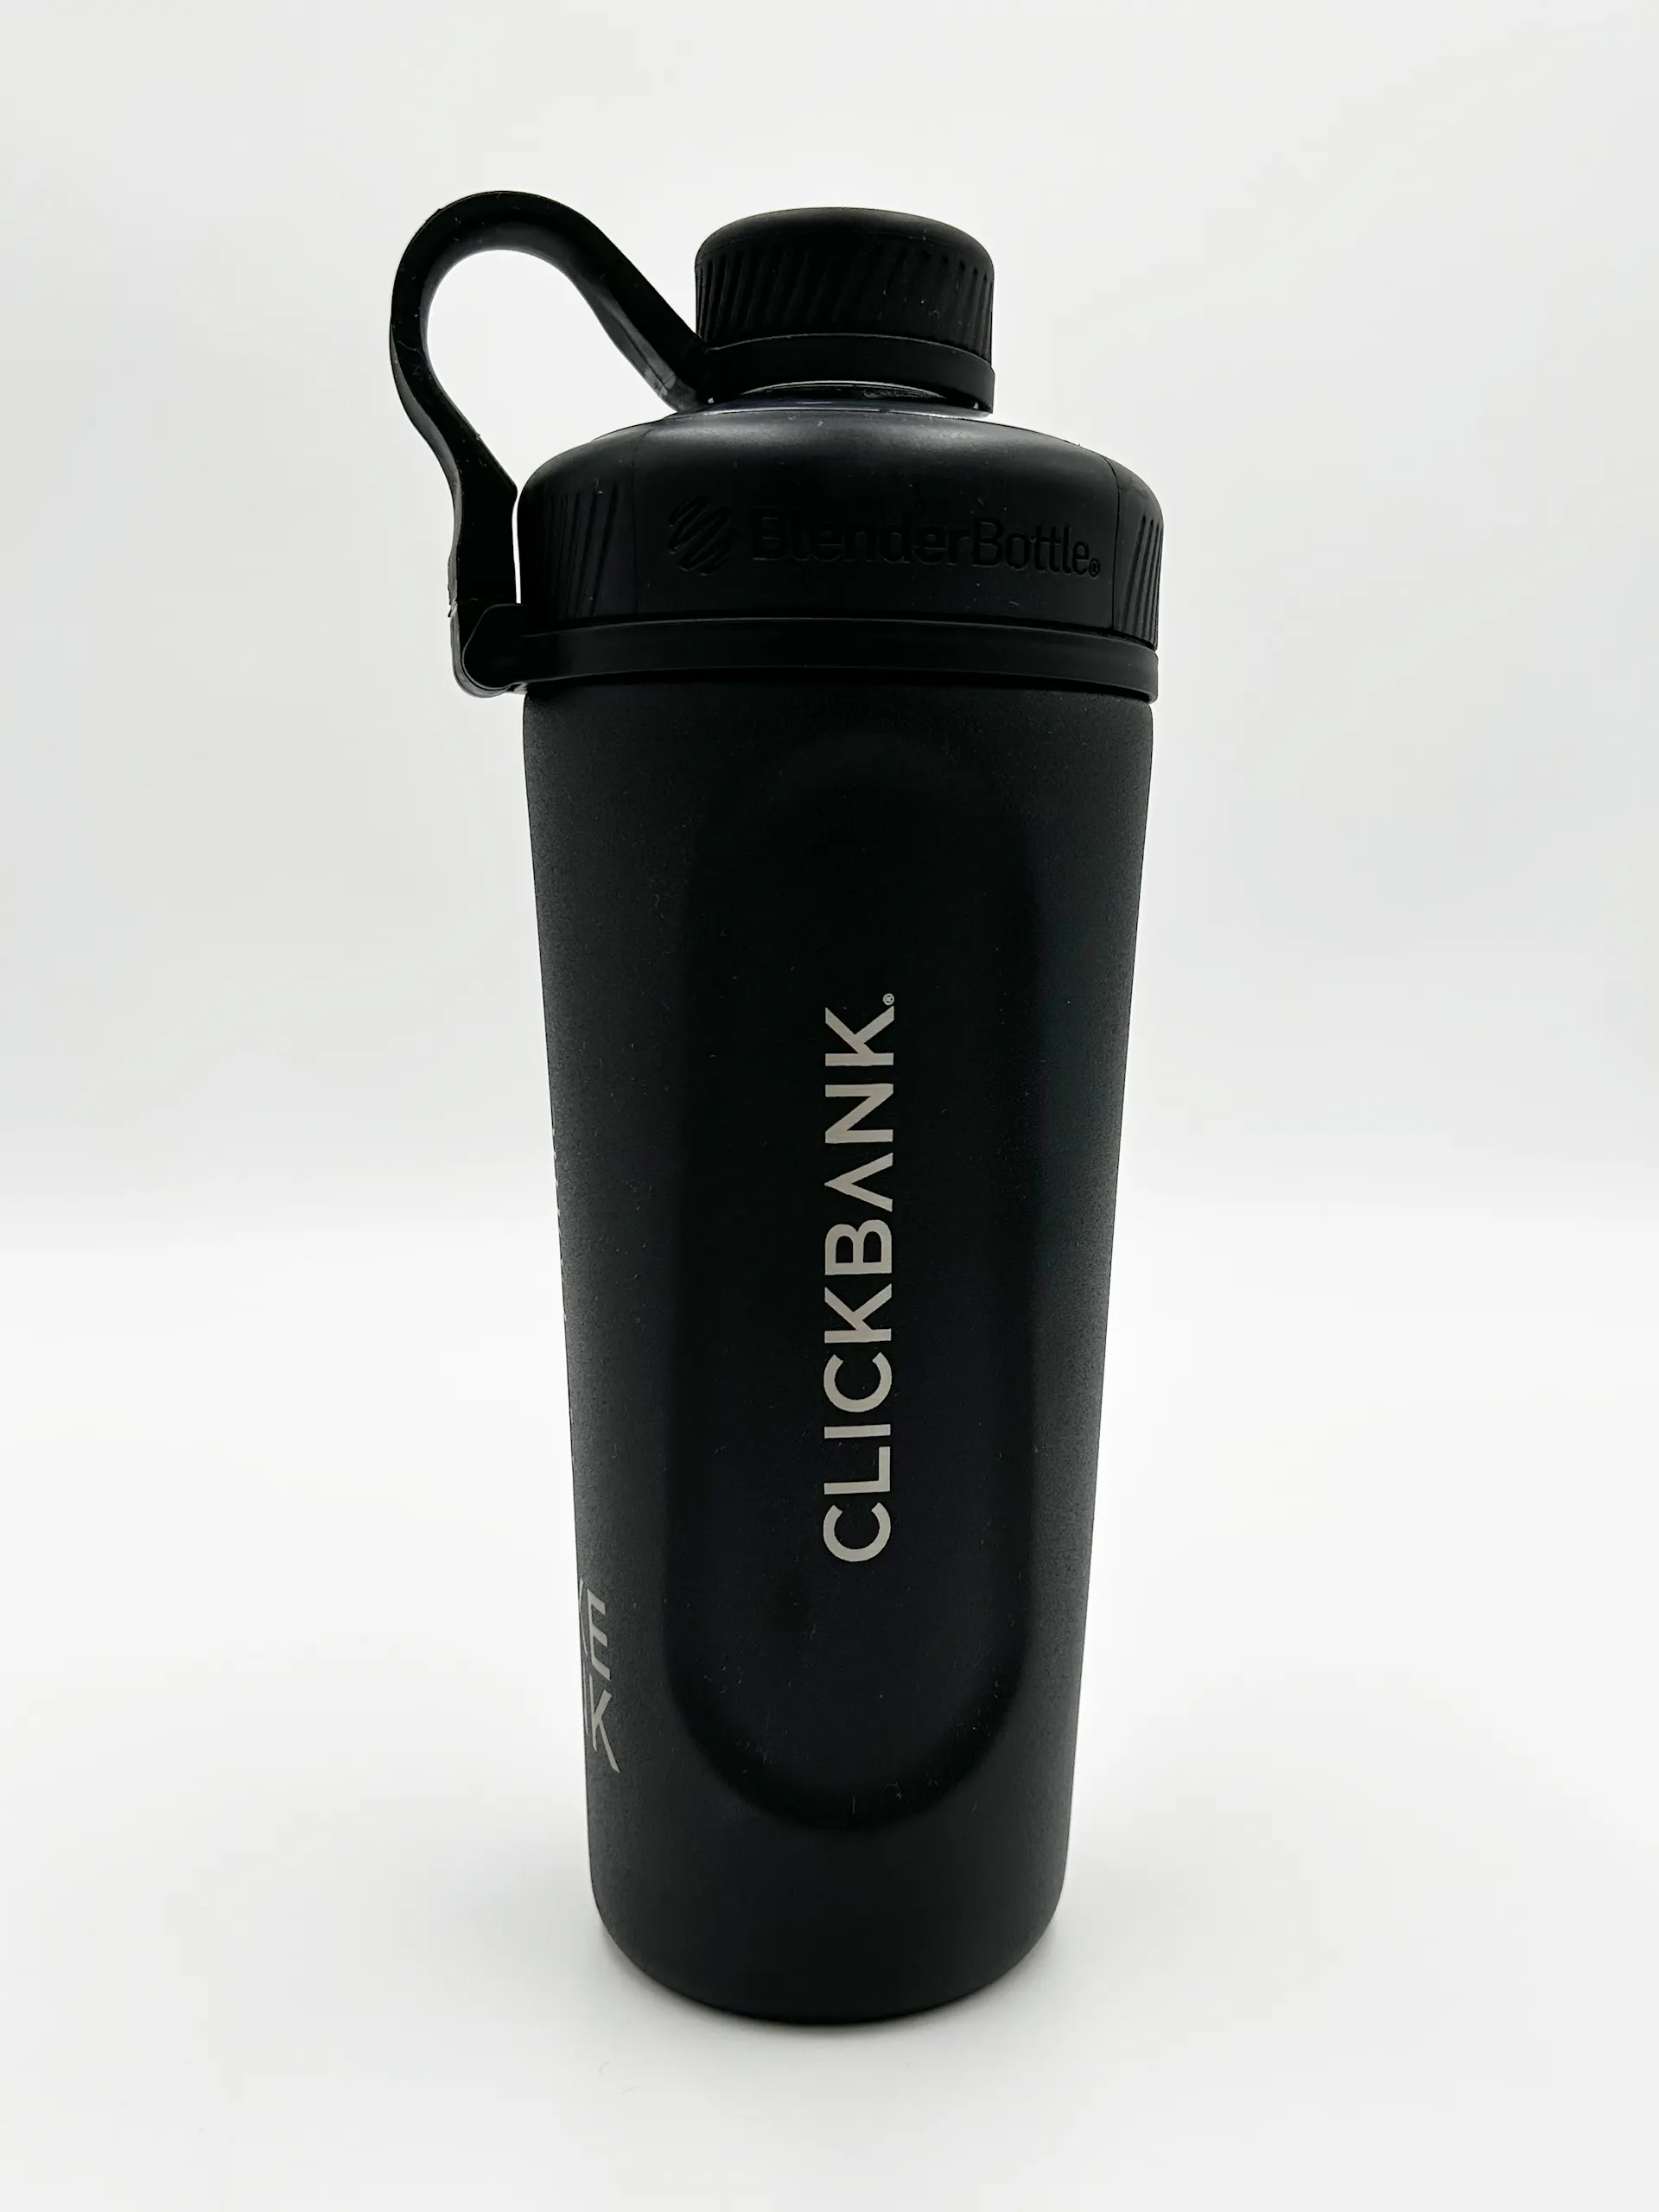 ClickBank Blender Bottles